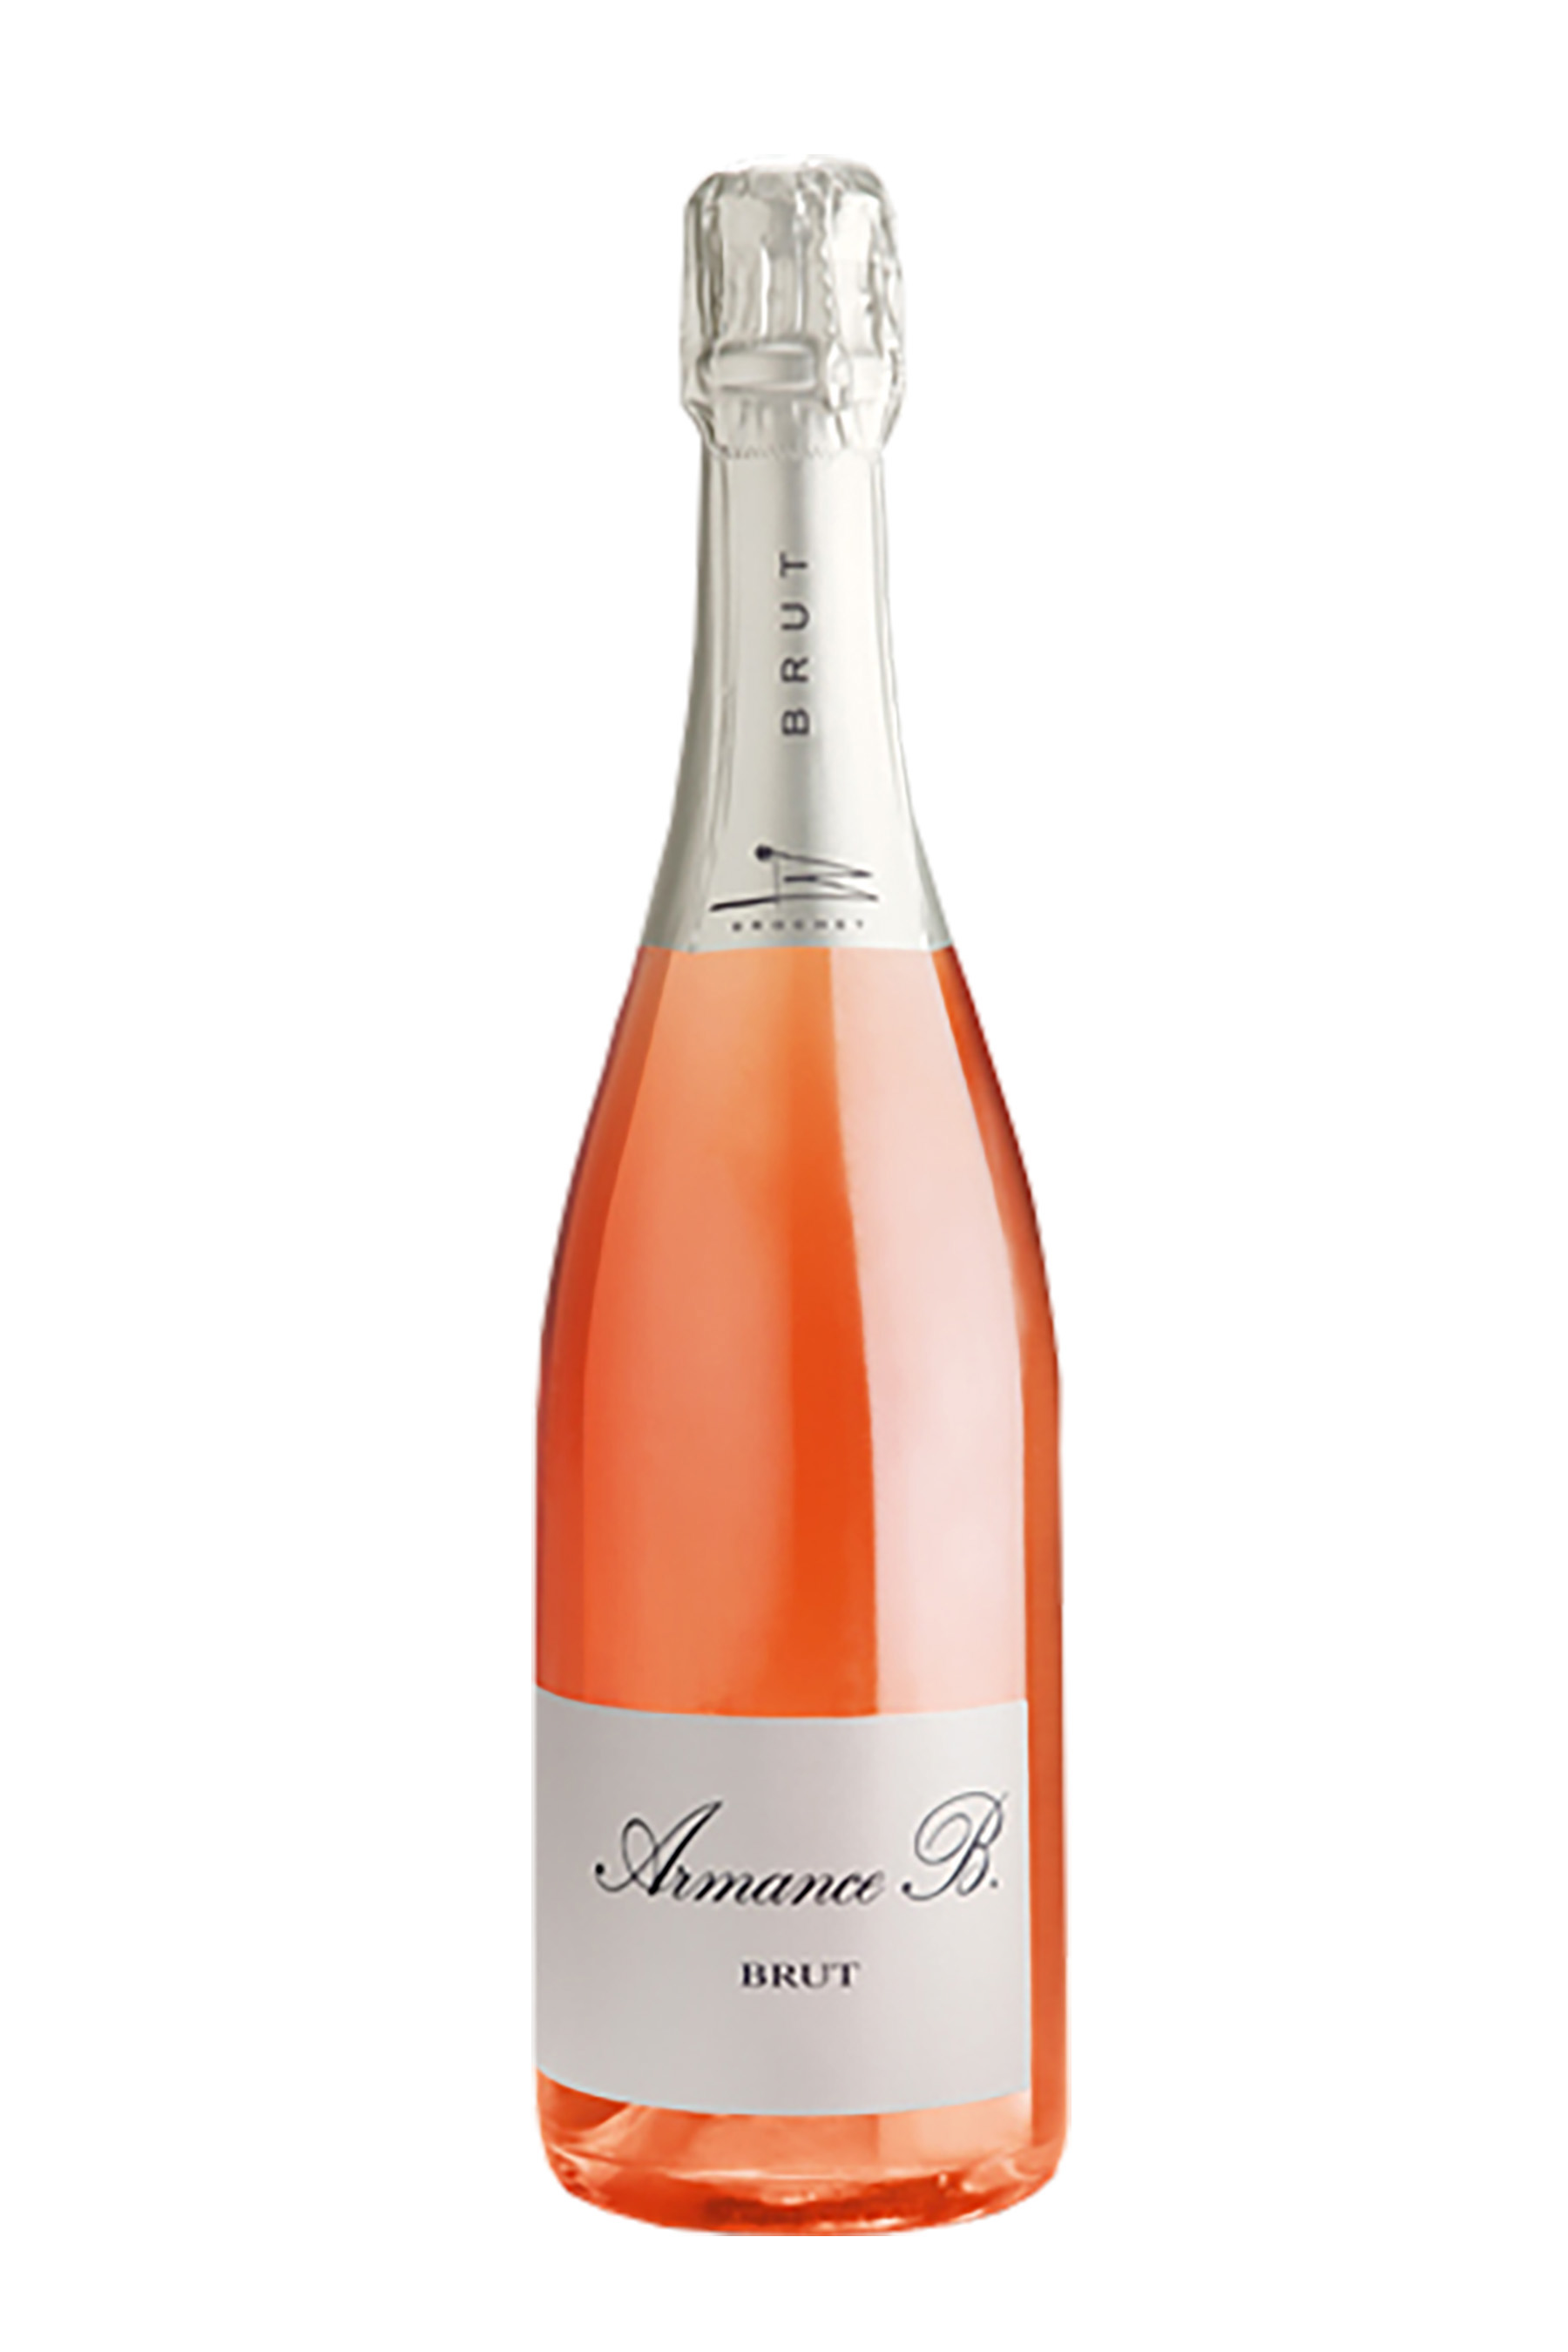 armance b. rosé - Format (cl) : 75